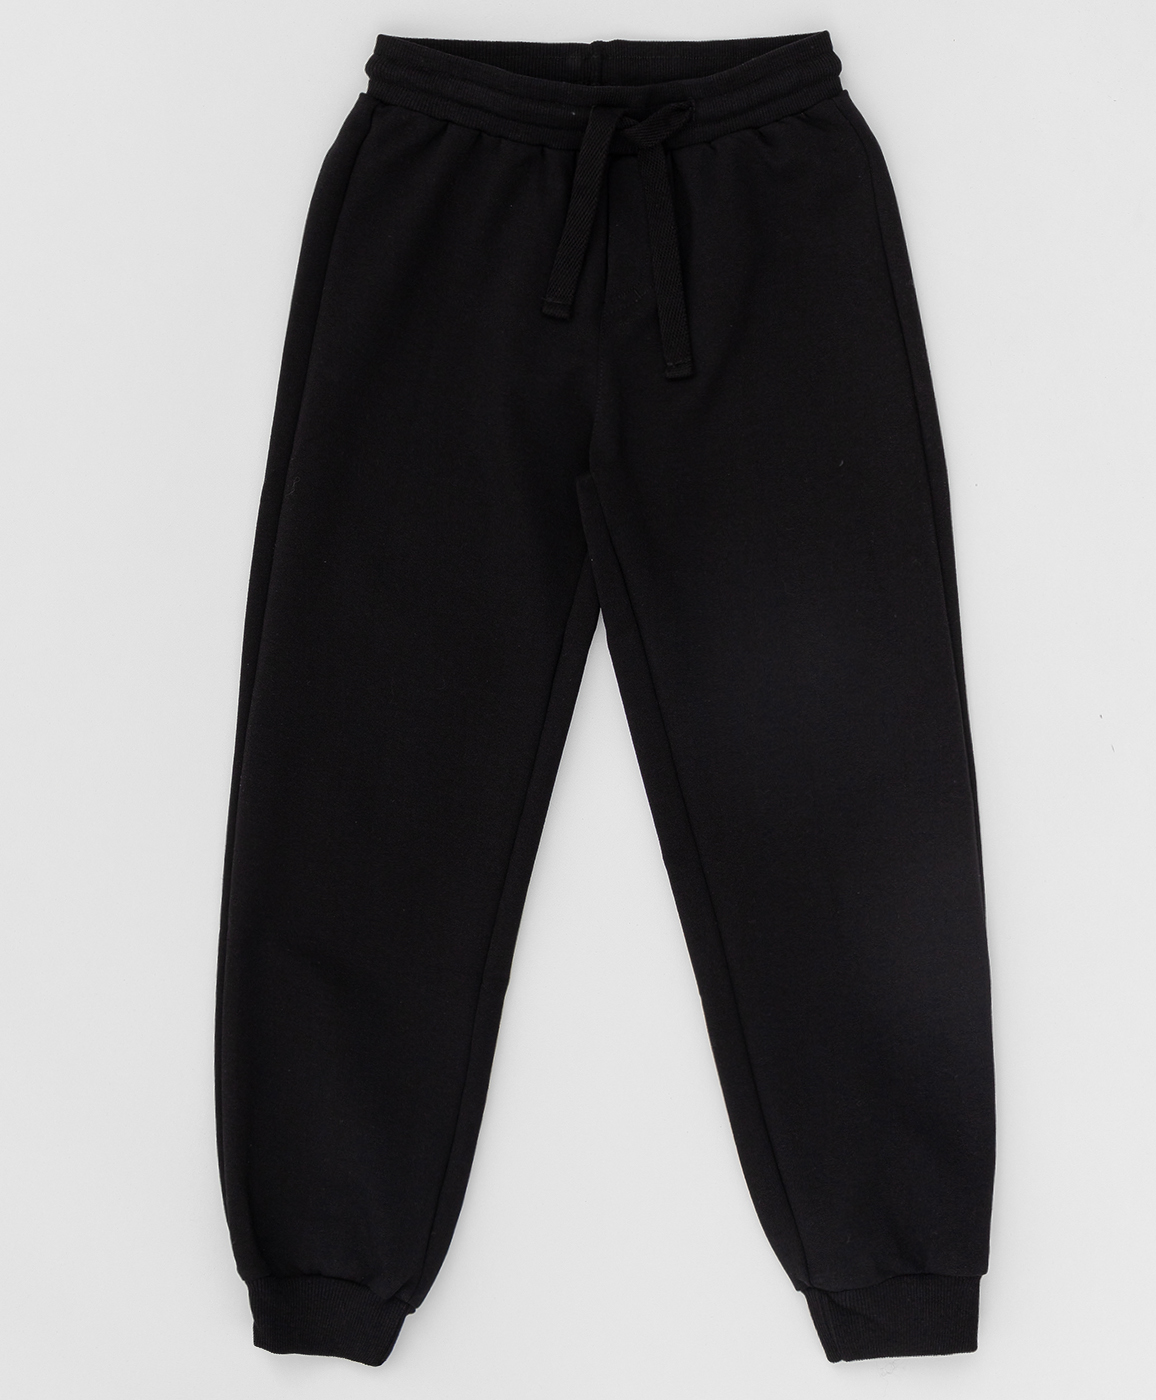 Черные брюки из футера Button Blue 220BBBS56010800, размер 128, цвет черный на резинке - фото 1